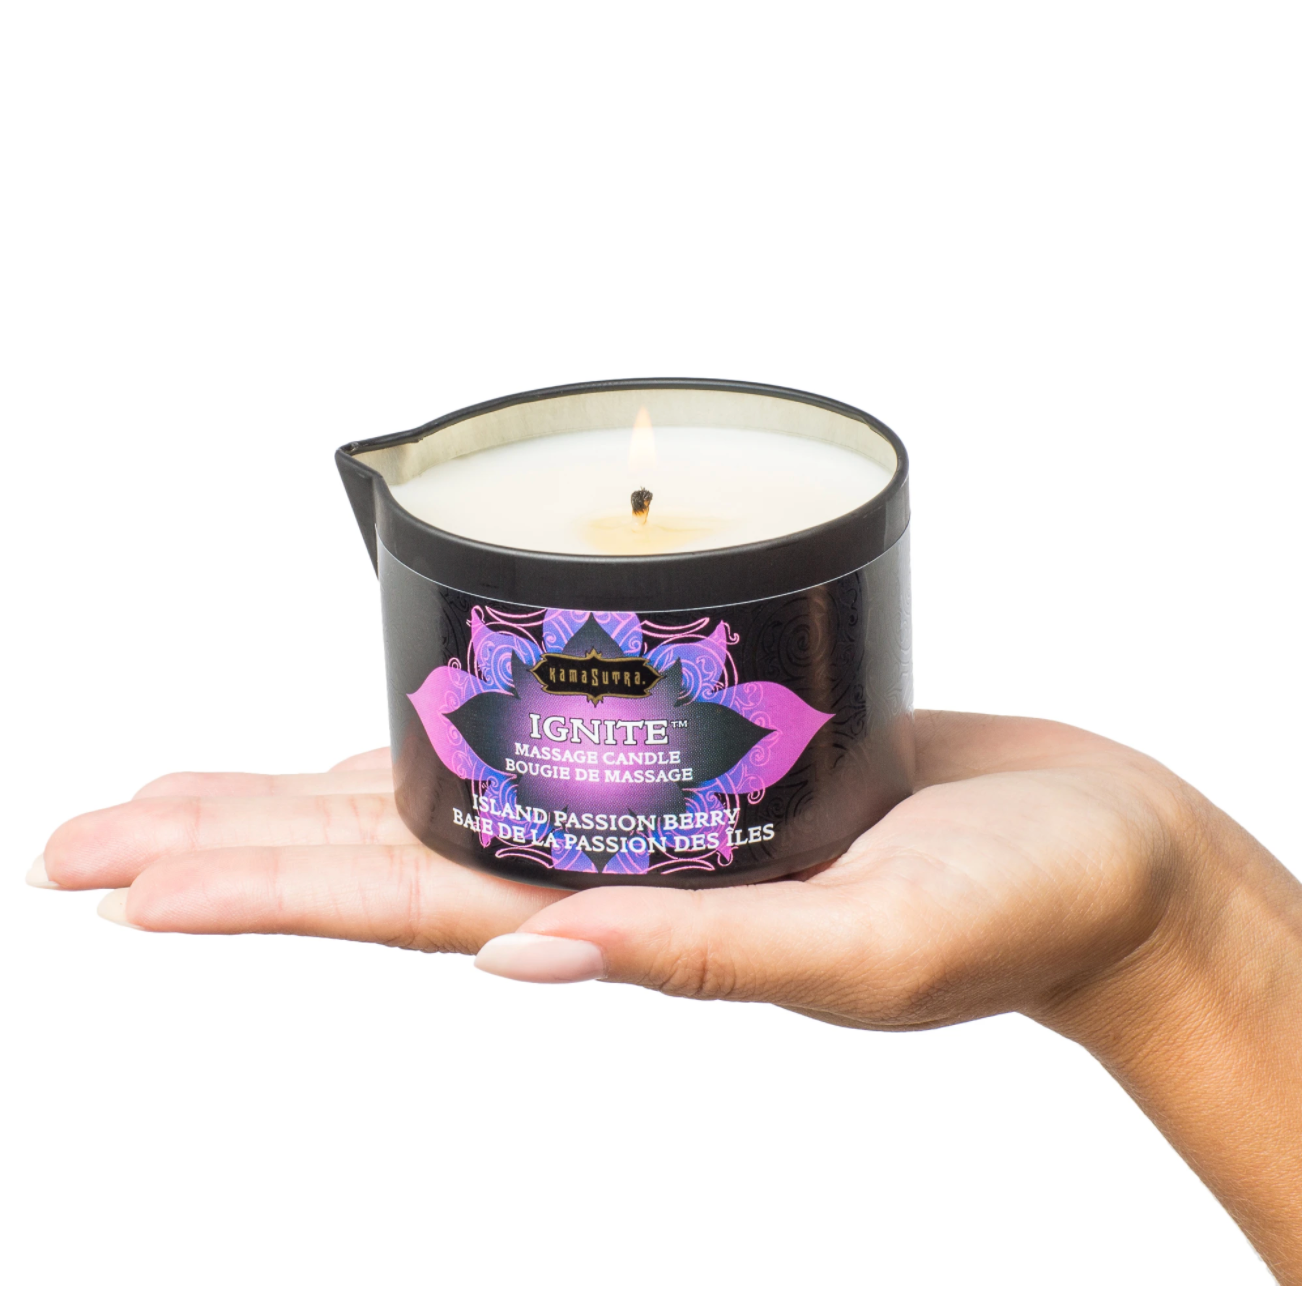 Ignite™ Massage Oil Candle